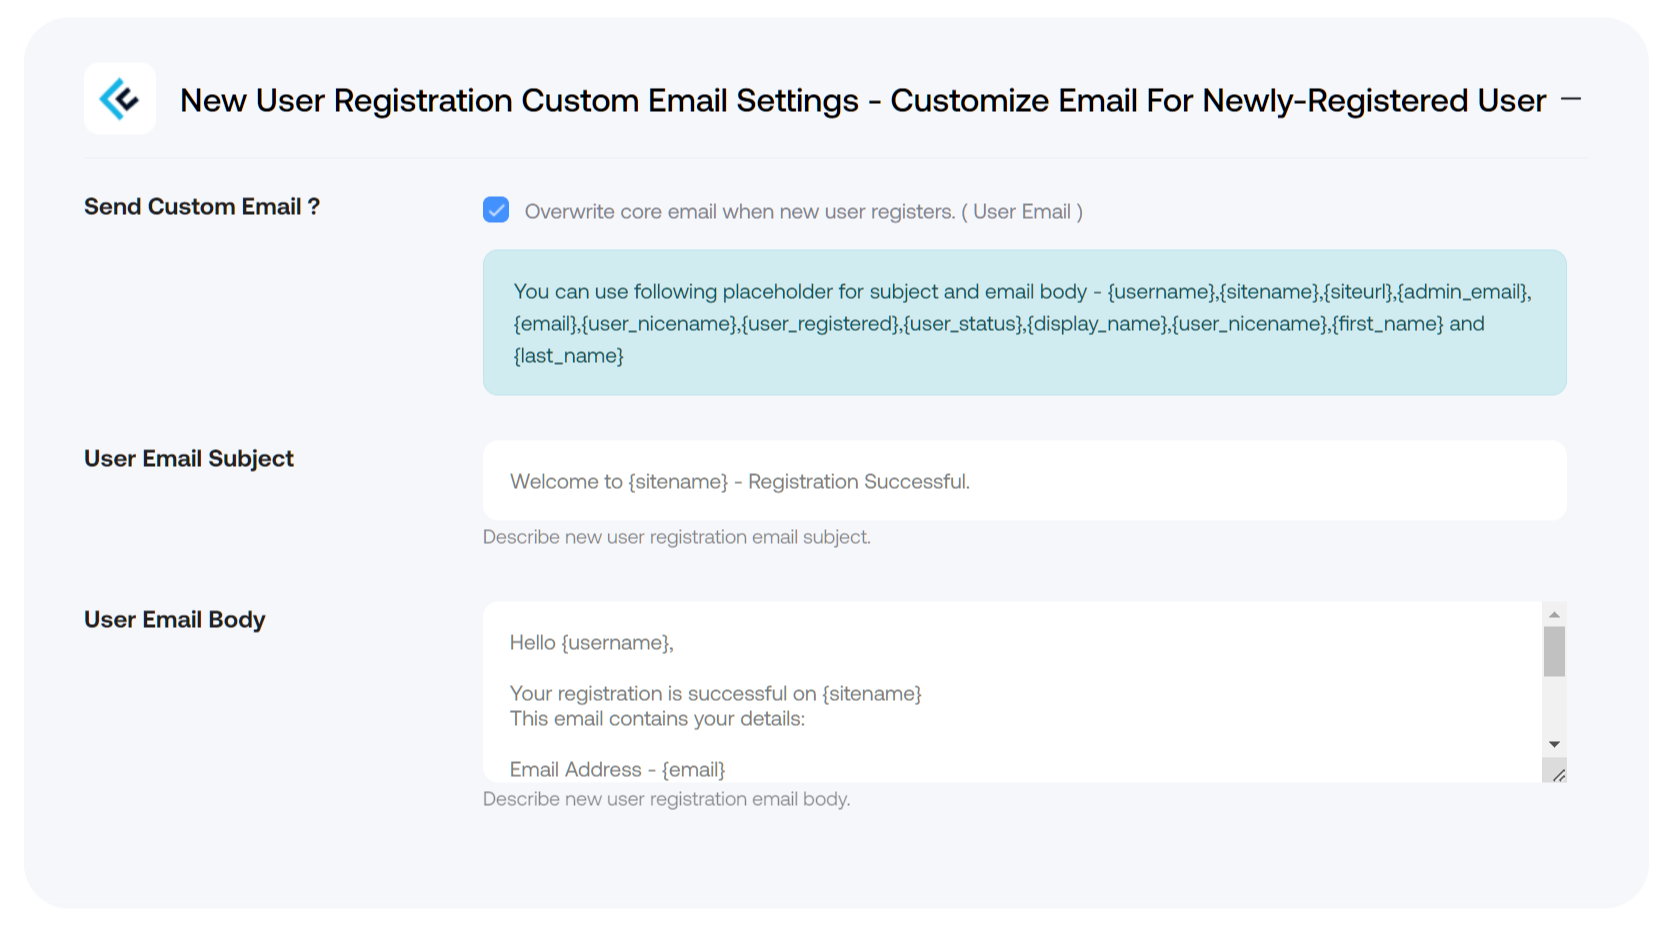 New User Registration Custom Email Settings